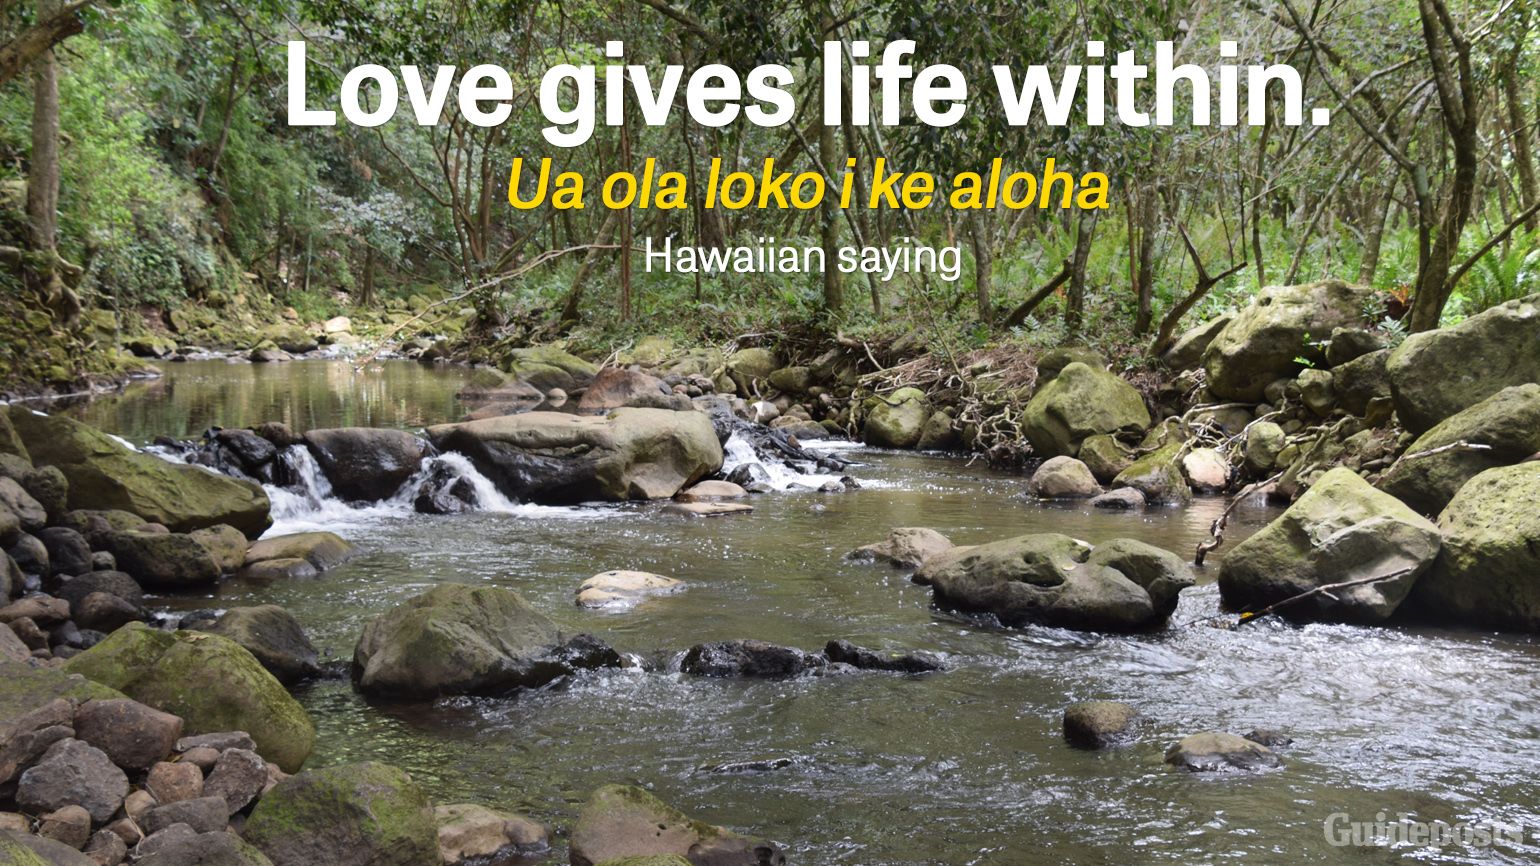 Love gives life within. Ua ola loko i ke aloha